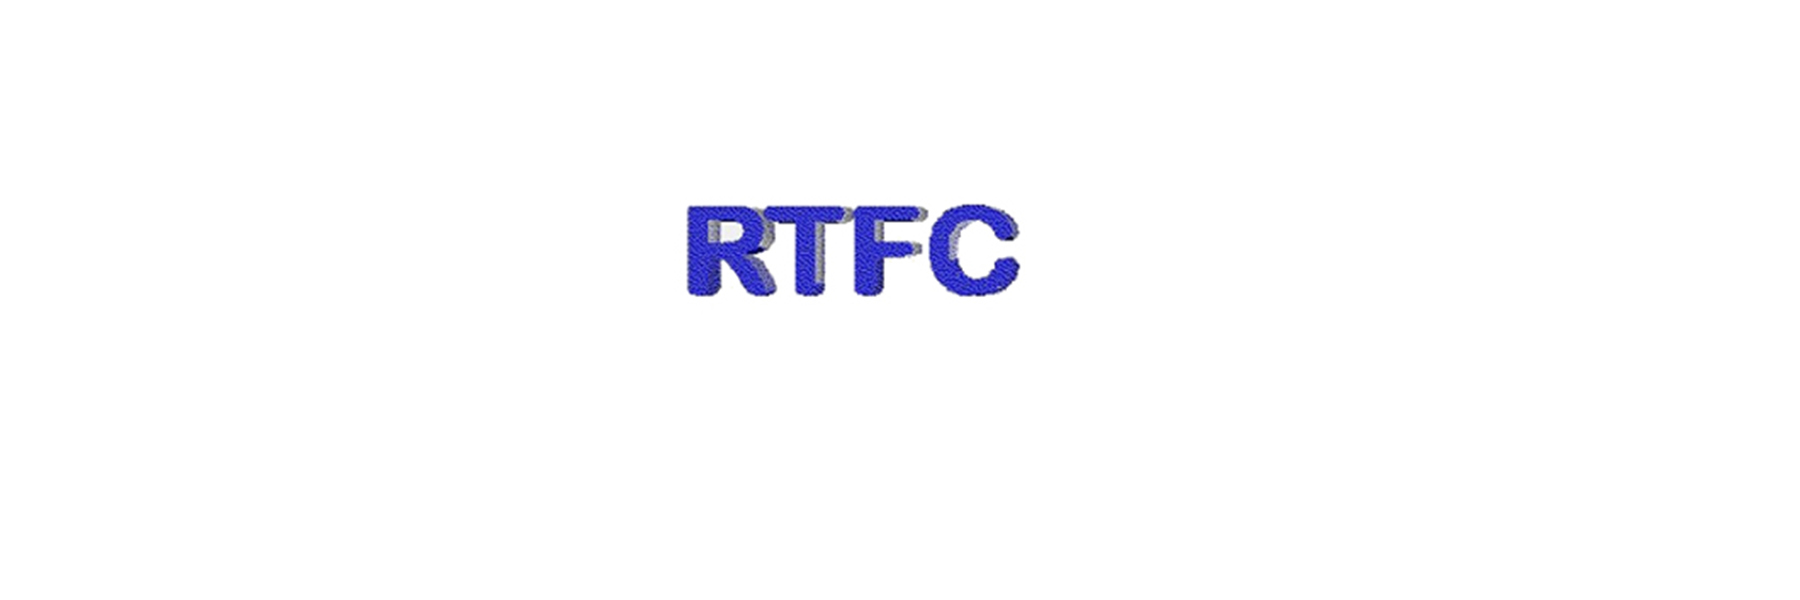 Abbildung des RTFC Logos